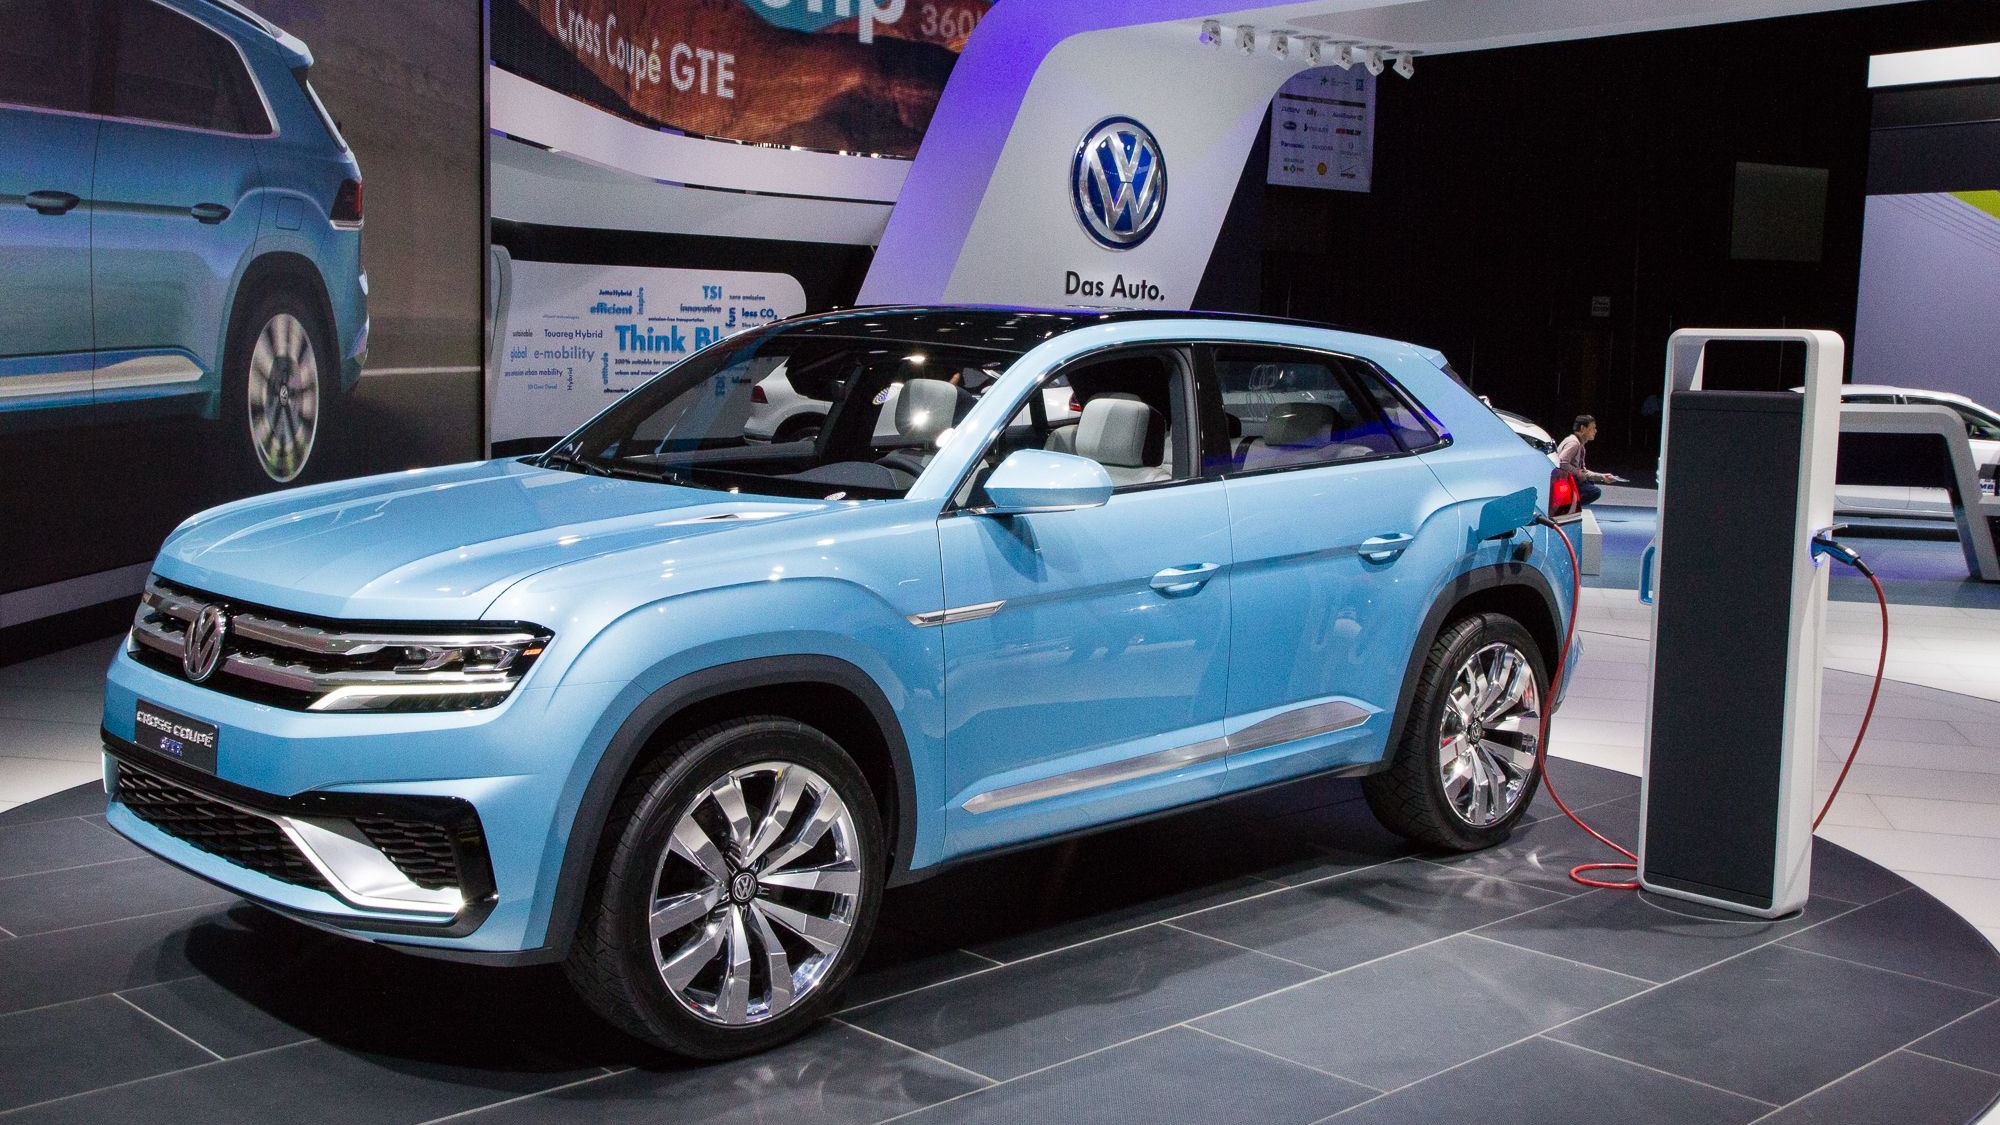 Volkswagen Cross Coupe GTE Concept live photos, 2015 Detroit Auto Show